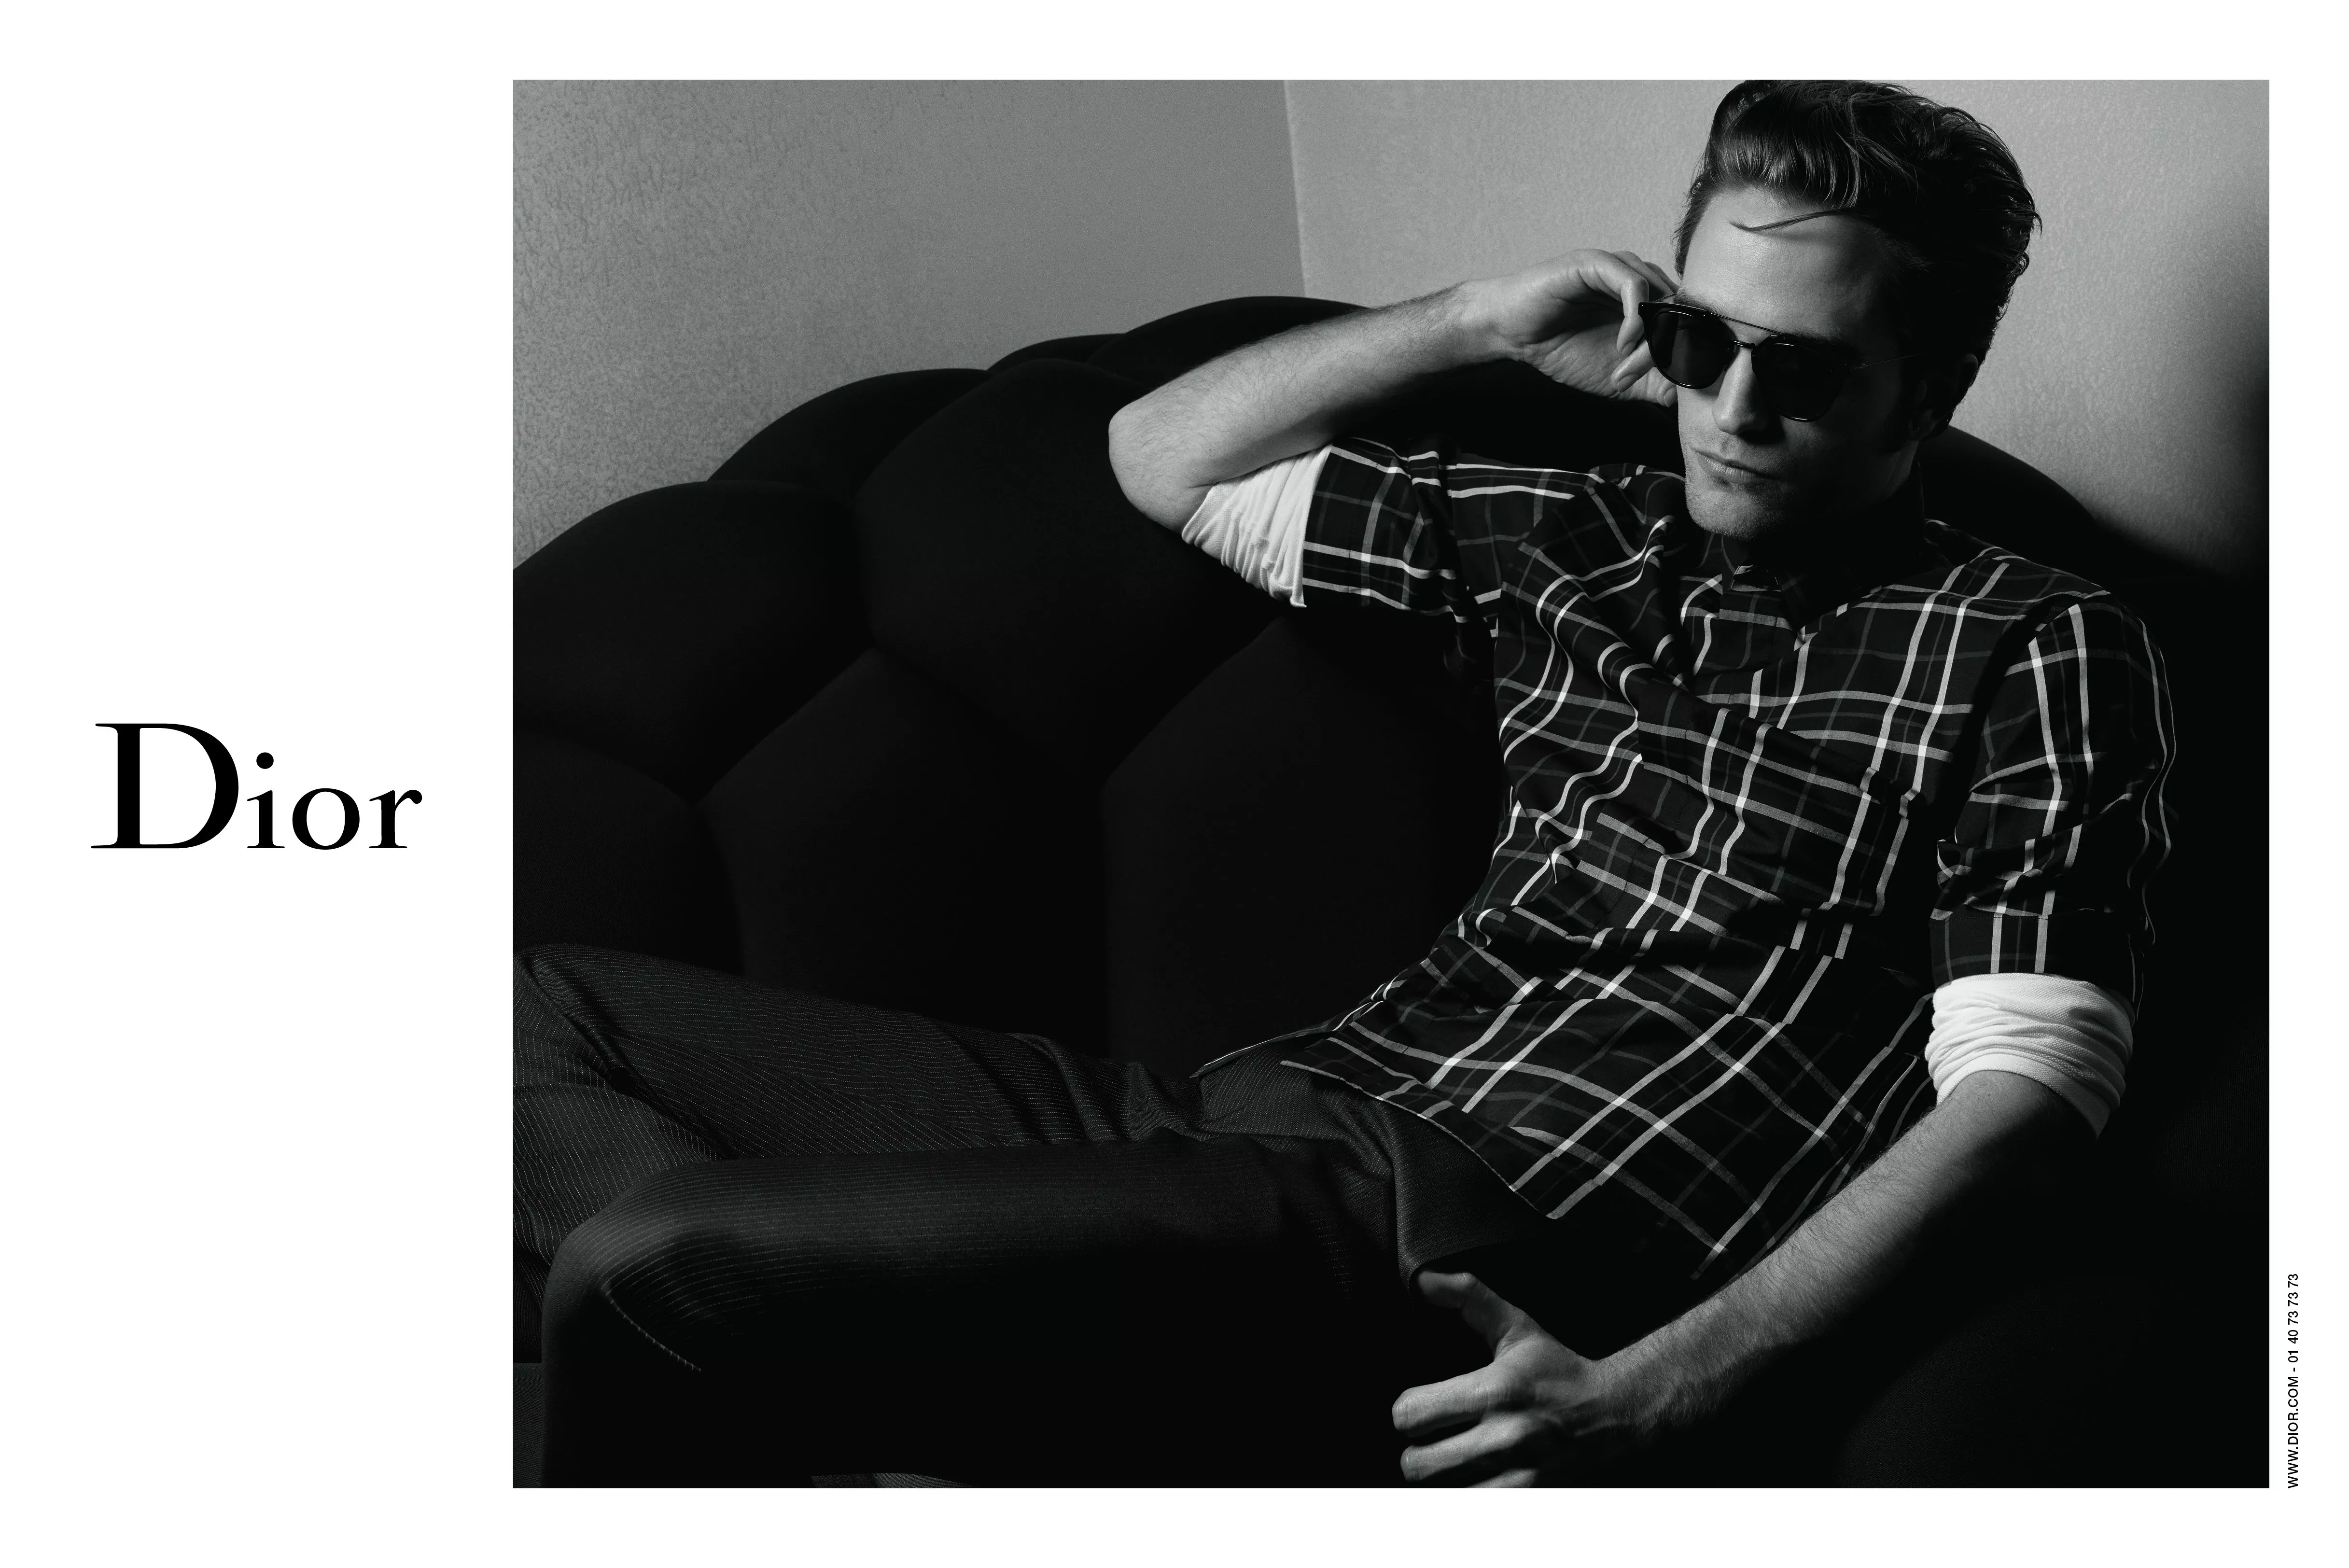 Robert Pattinson الوجه الإعلاني الجديد لأزياء Dior الرجاليّة